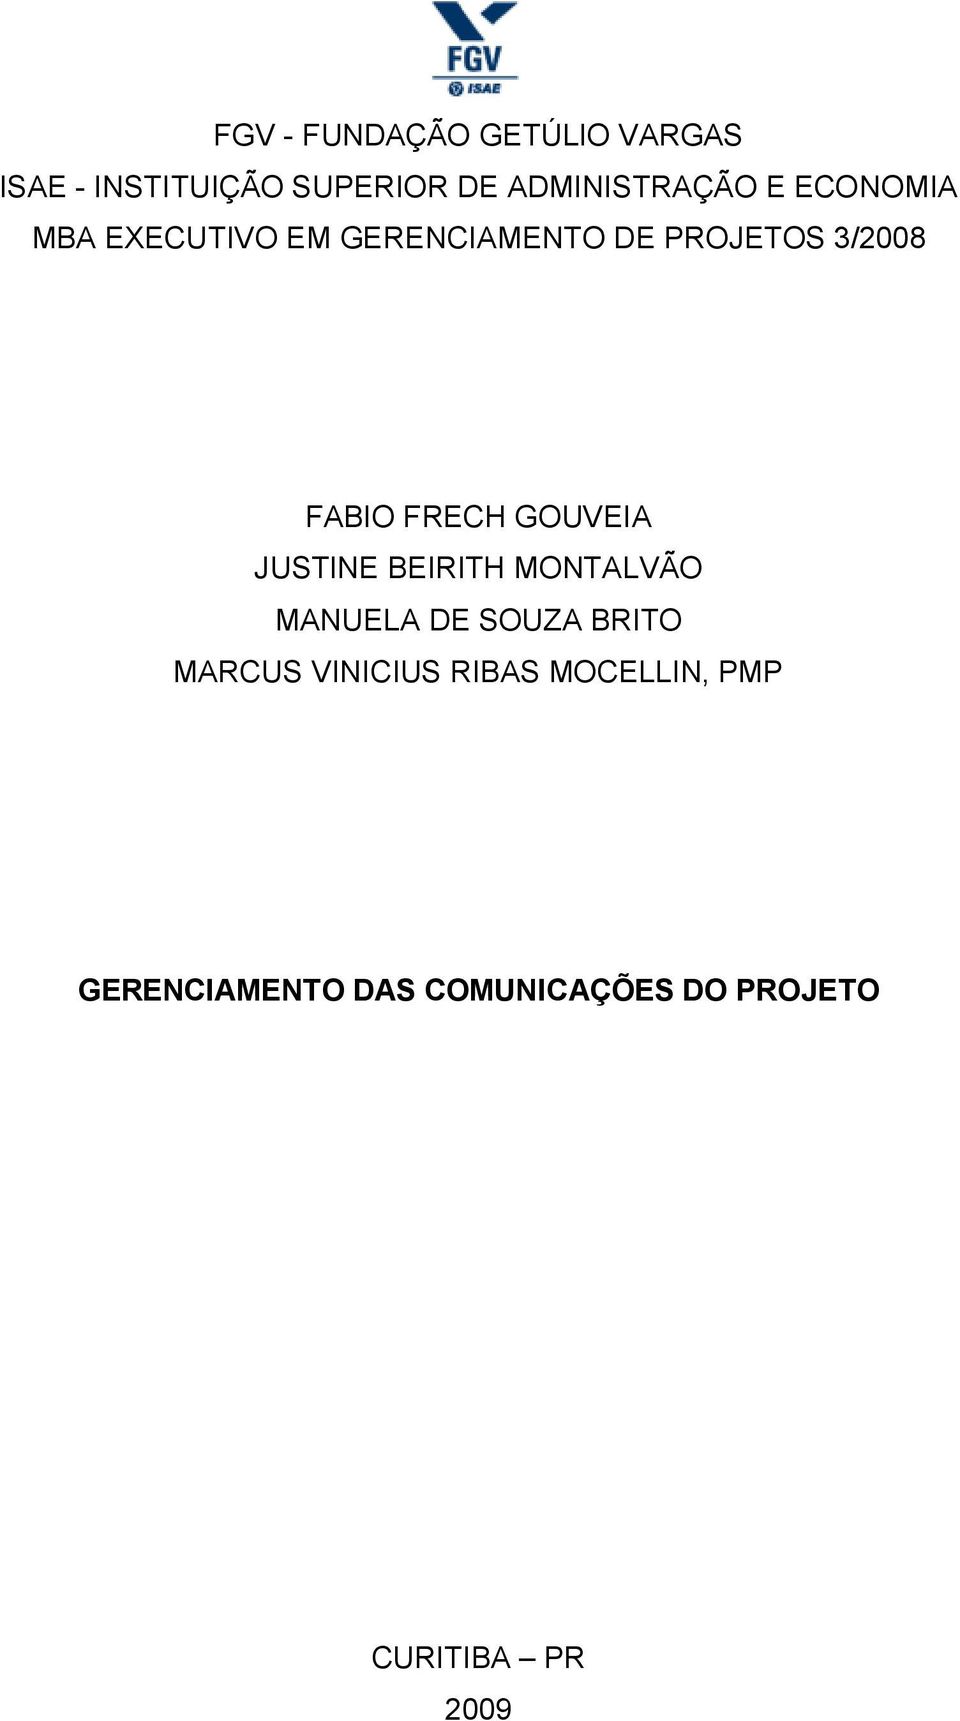 GOUVEIA JUSTINE BEIRITH MONTALVÃO MANUELA DE SOUZA BRITO MARCUS VINICIUS